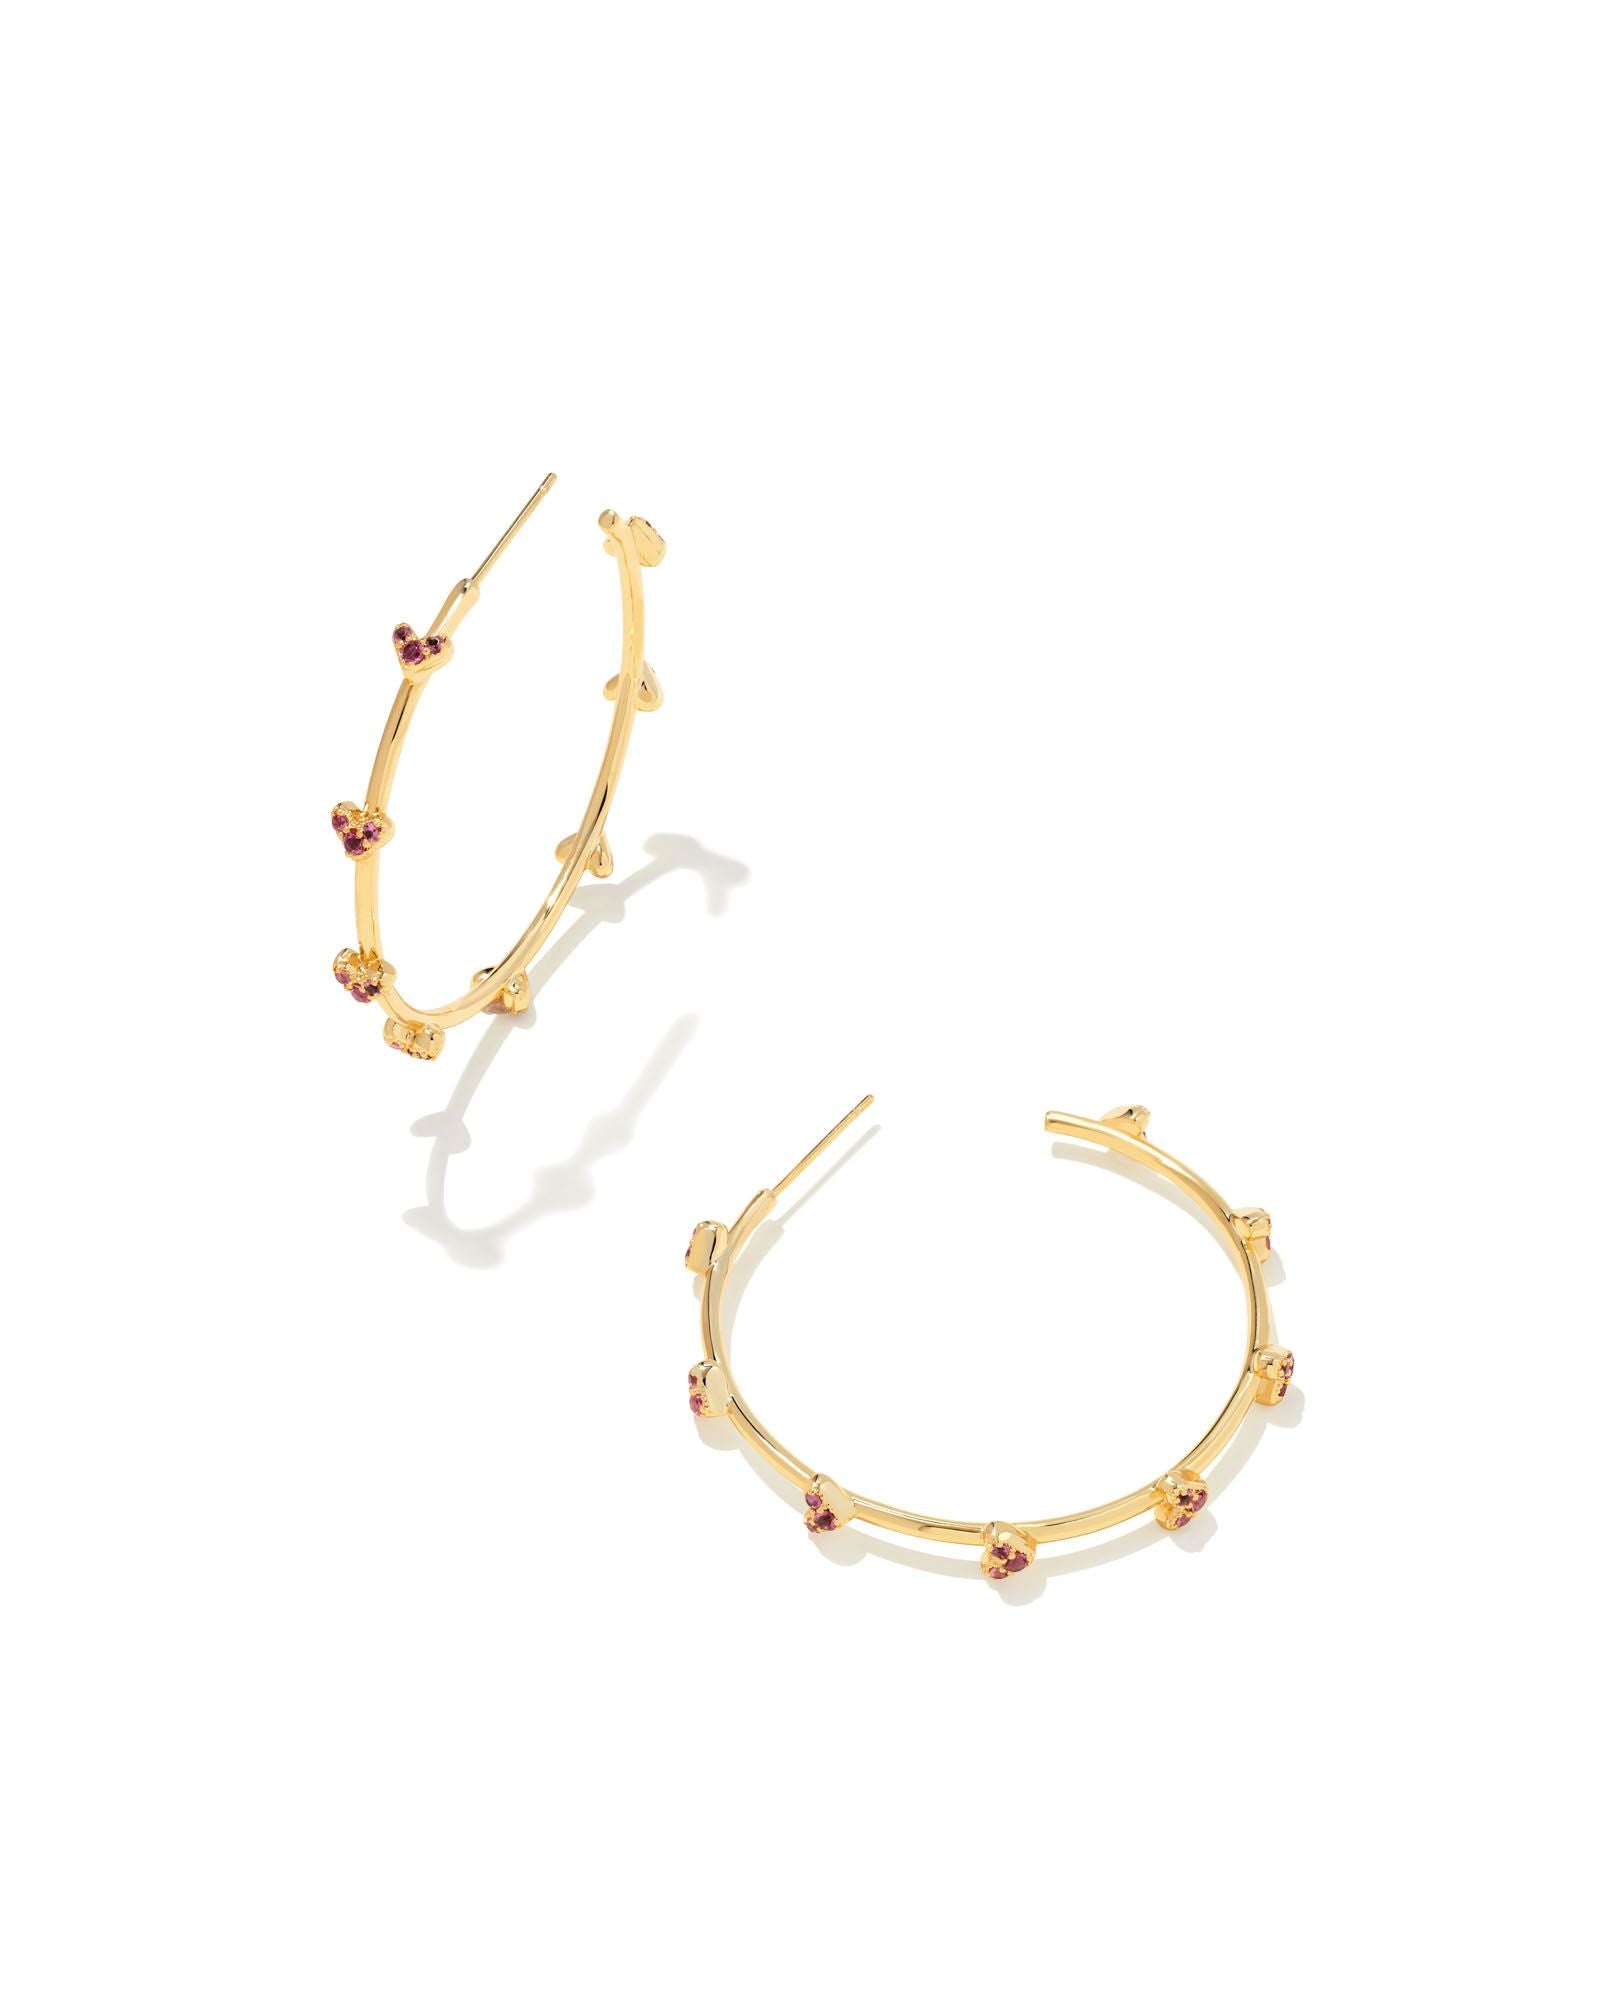 Kendra Scott Haven Heart Hoop Earrings Gold Pink Crystal-Earrings-Kendra Scott-E1999GLD-The Twisted Chandelier